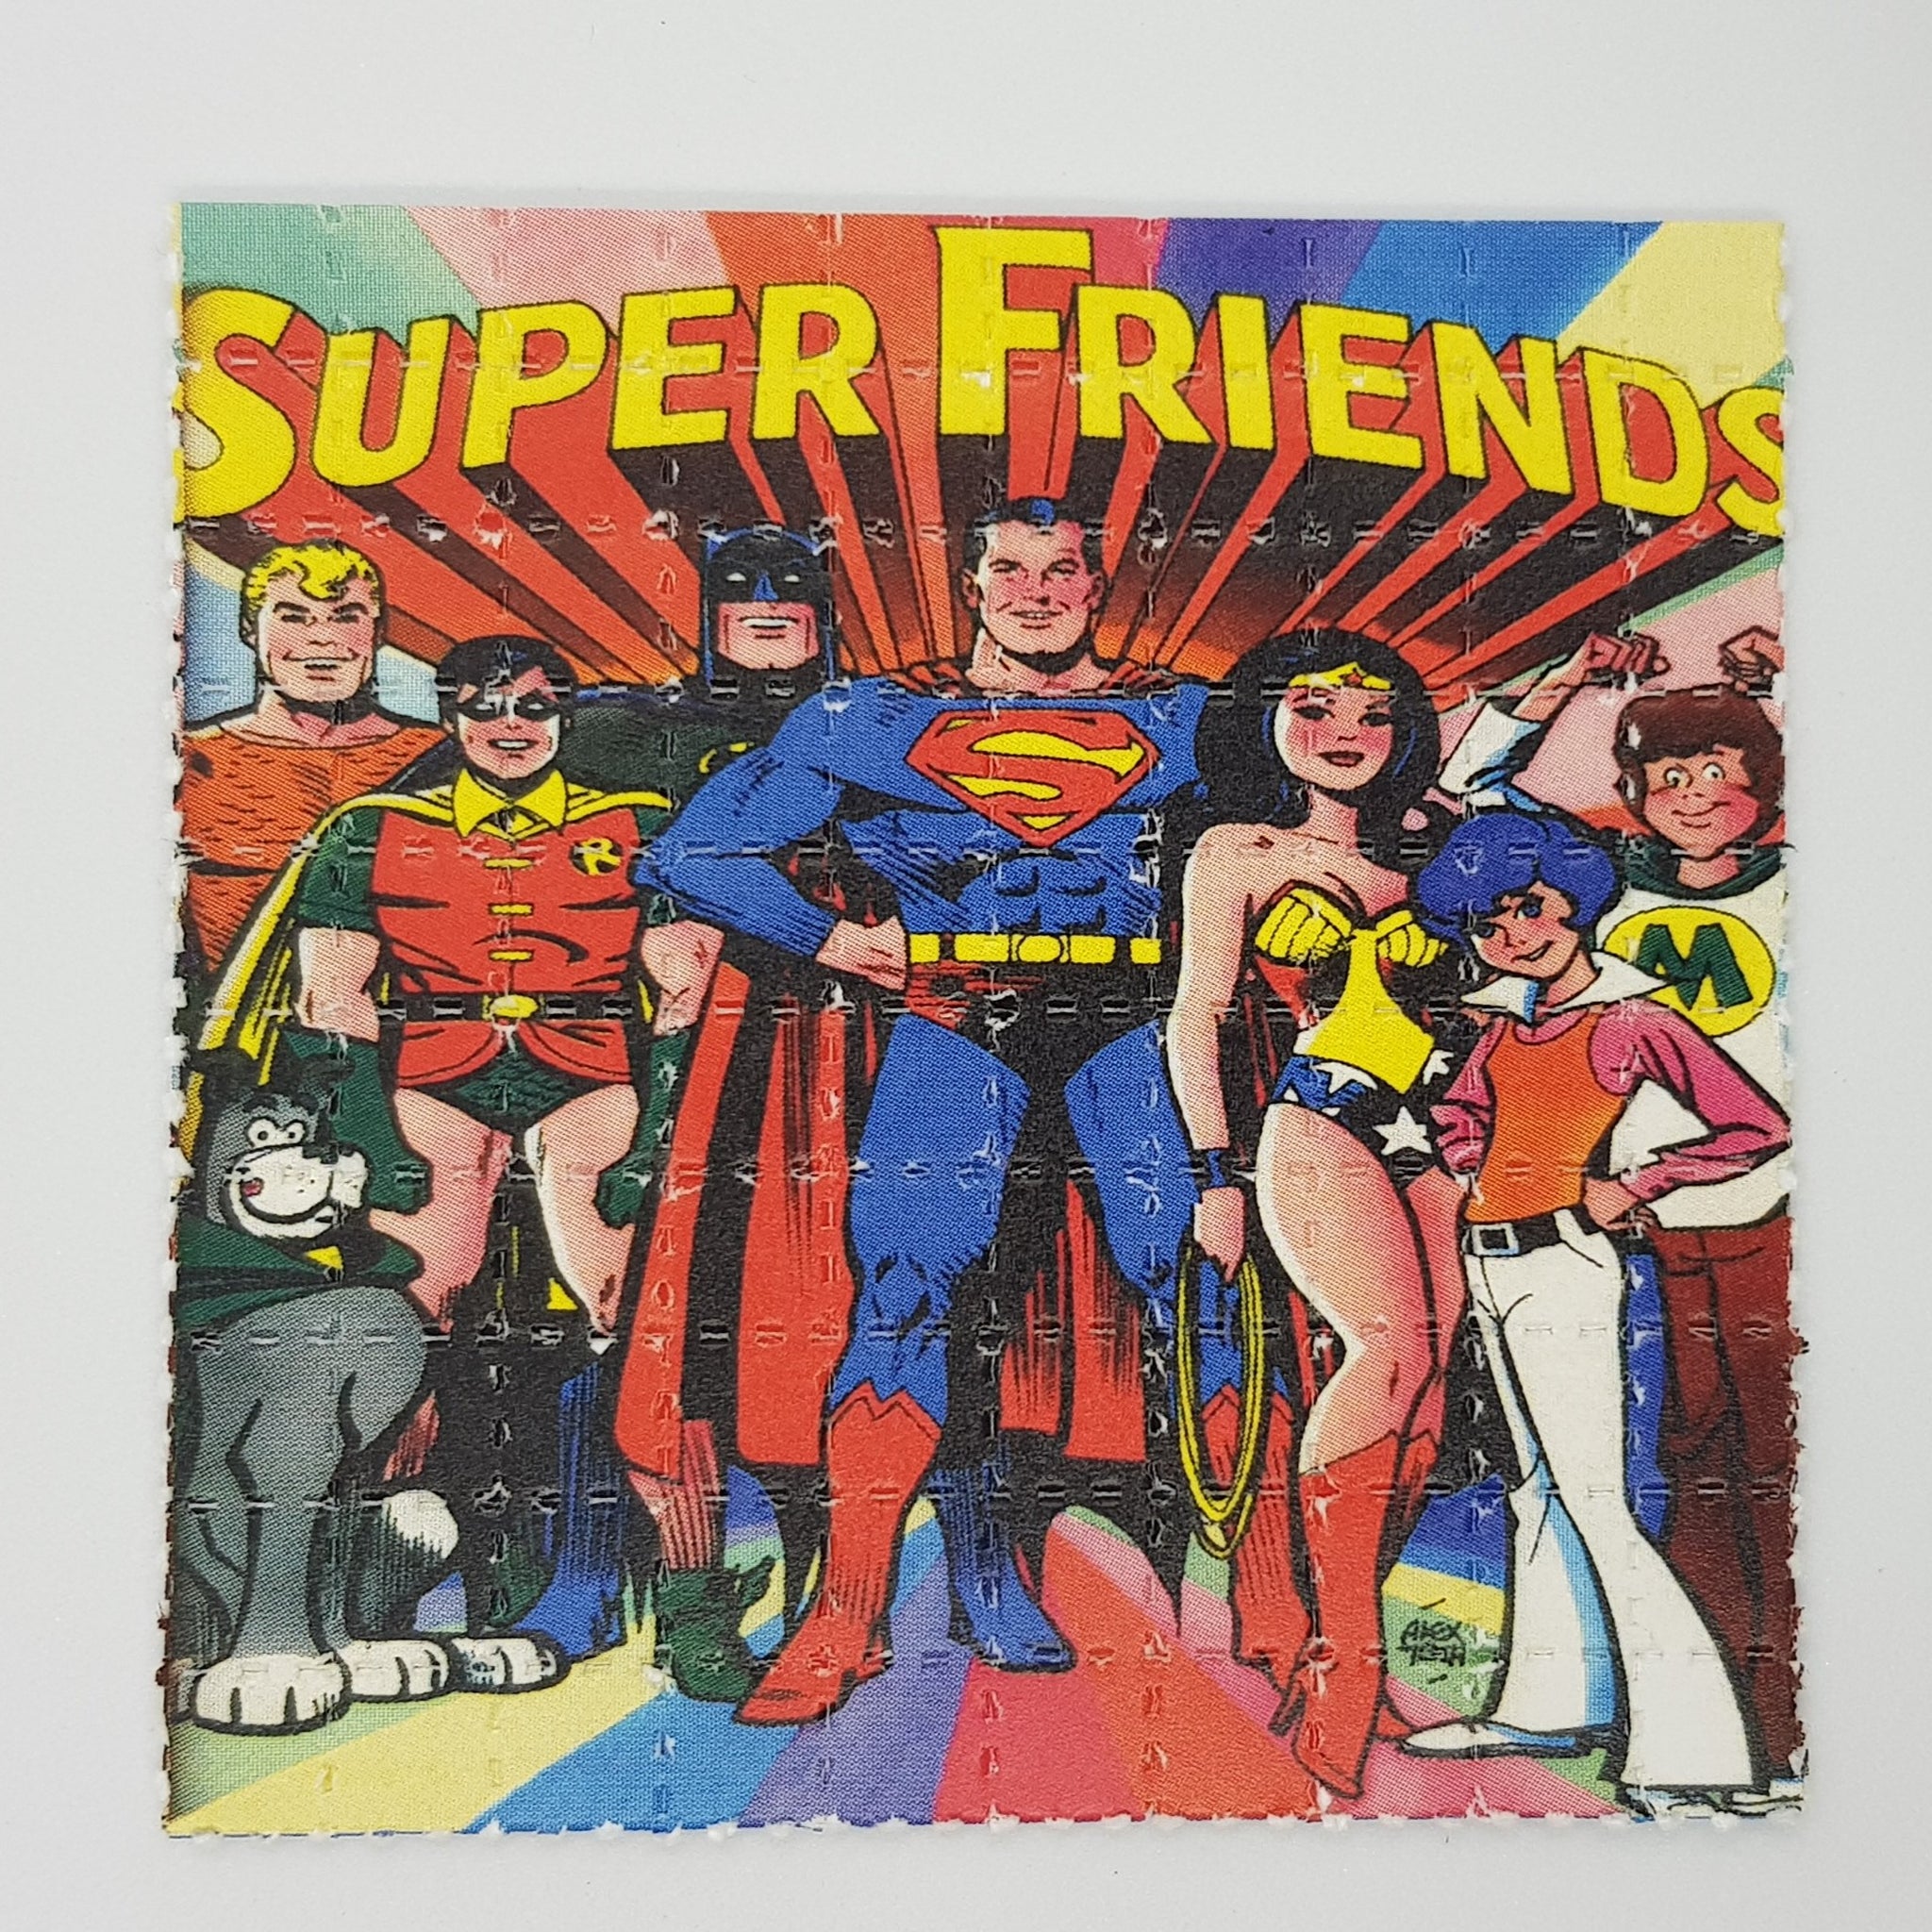 Super Hero LSD Blotter Art